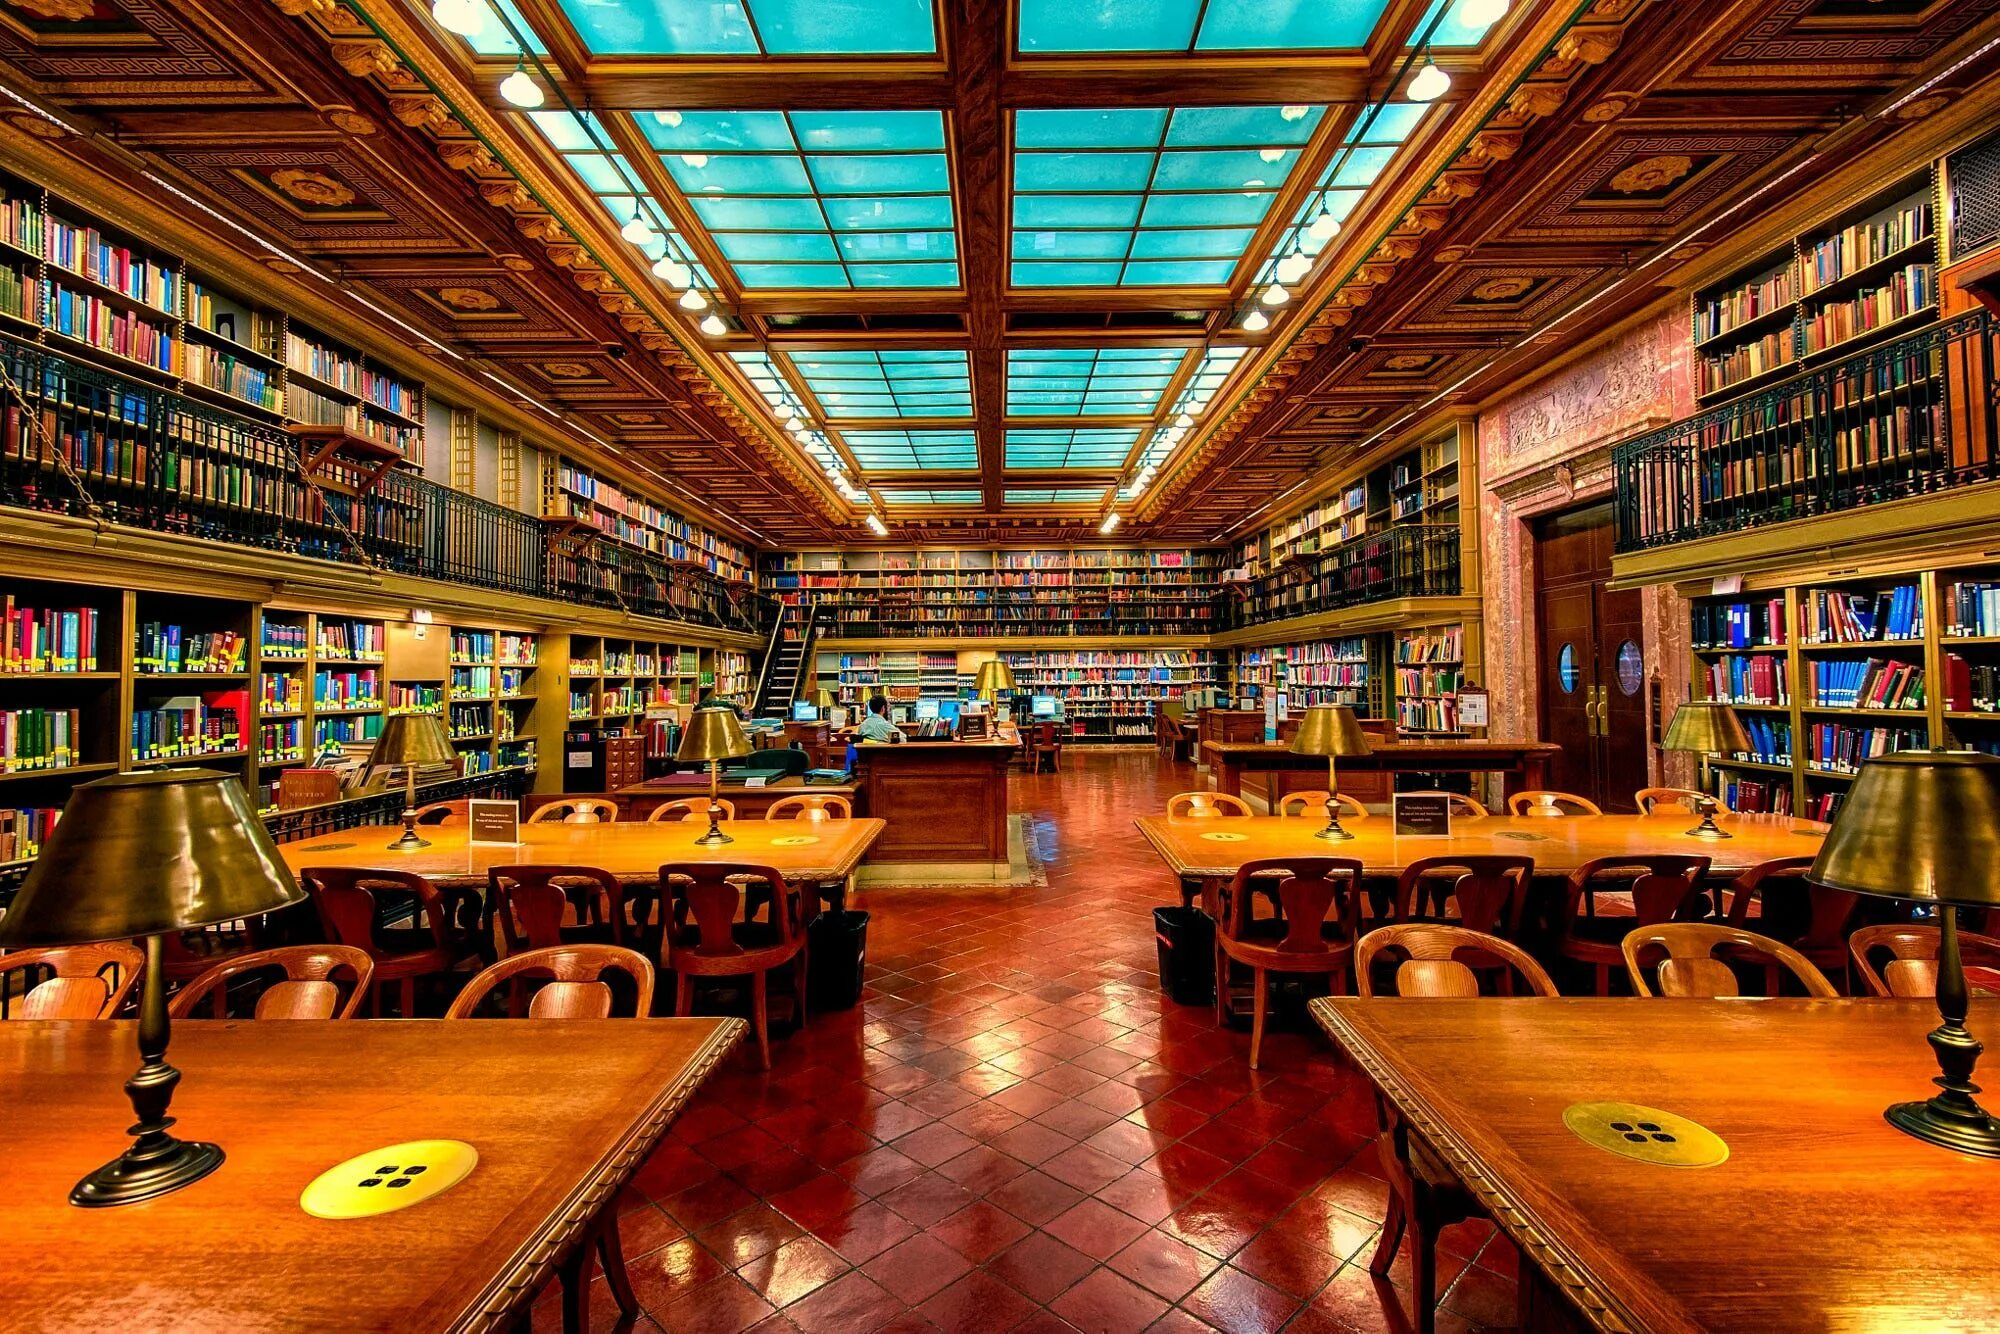 Public o. Публичная библиотека Нью-Йорка. Публичная библиотека Нью-Йорка Эш. Библиотека «University Club Library», Нью- Йорк, США. (Peter Bond). Библиотека города Нью Йорка.